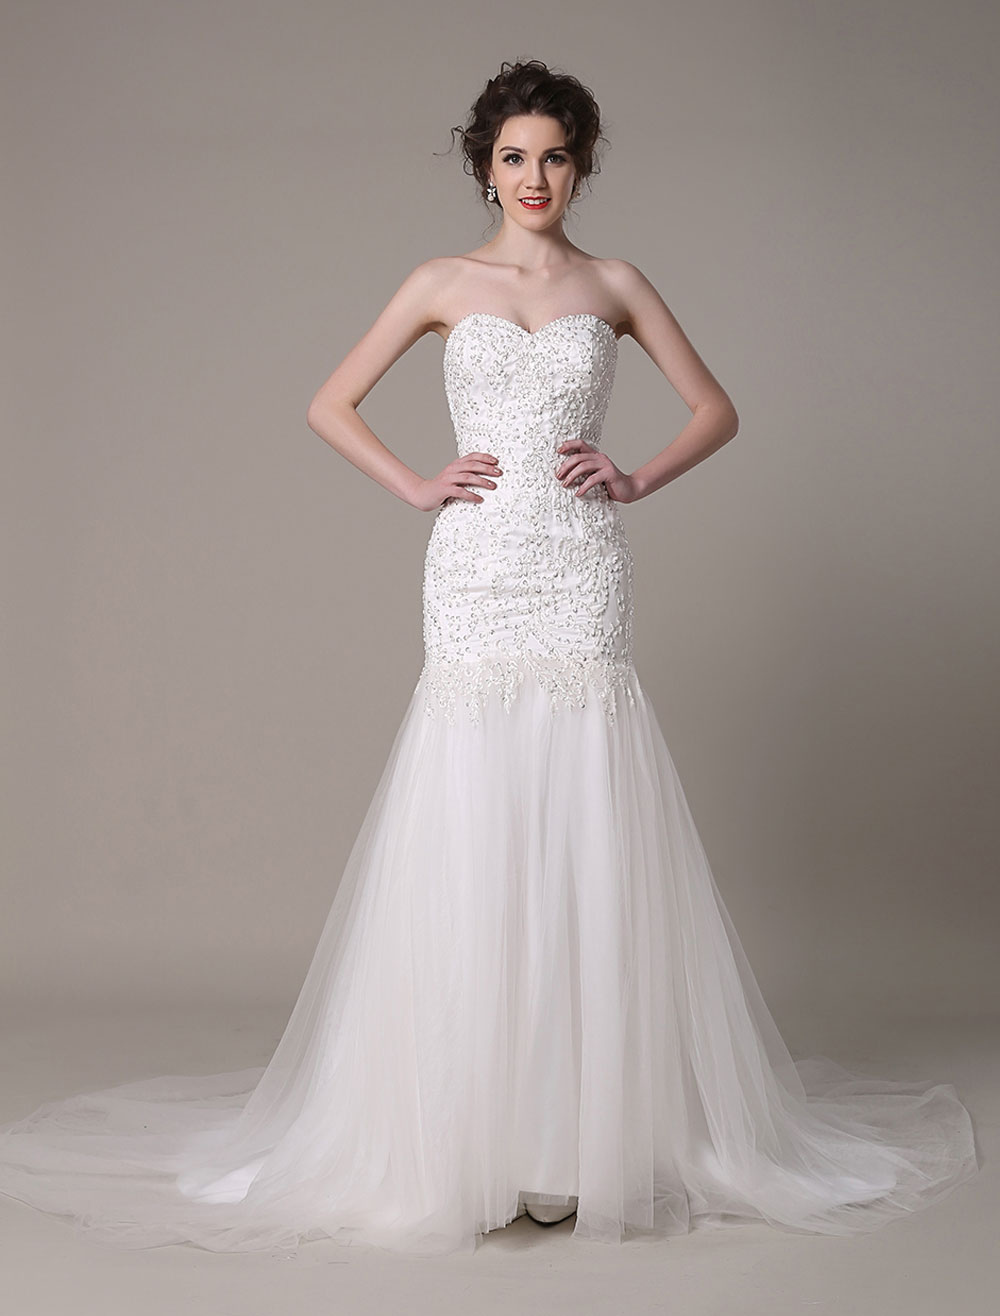 Sequined Wedding Dress Detachable Neckline Lace Applique Mermaid Court ...